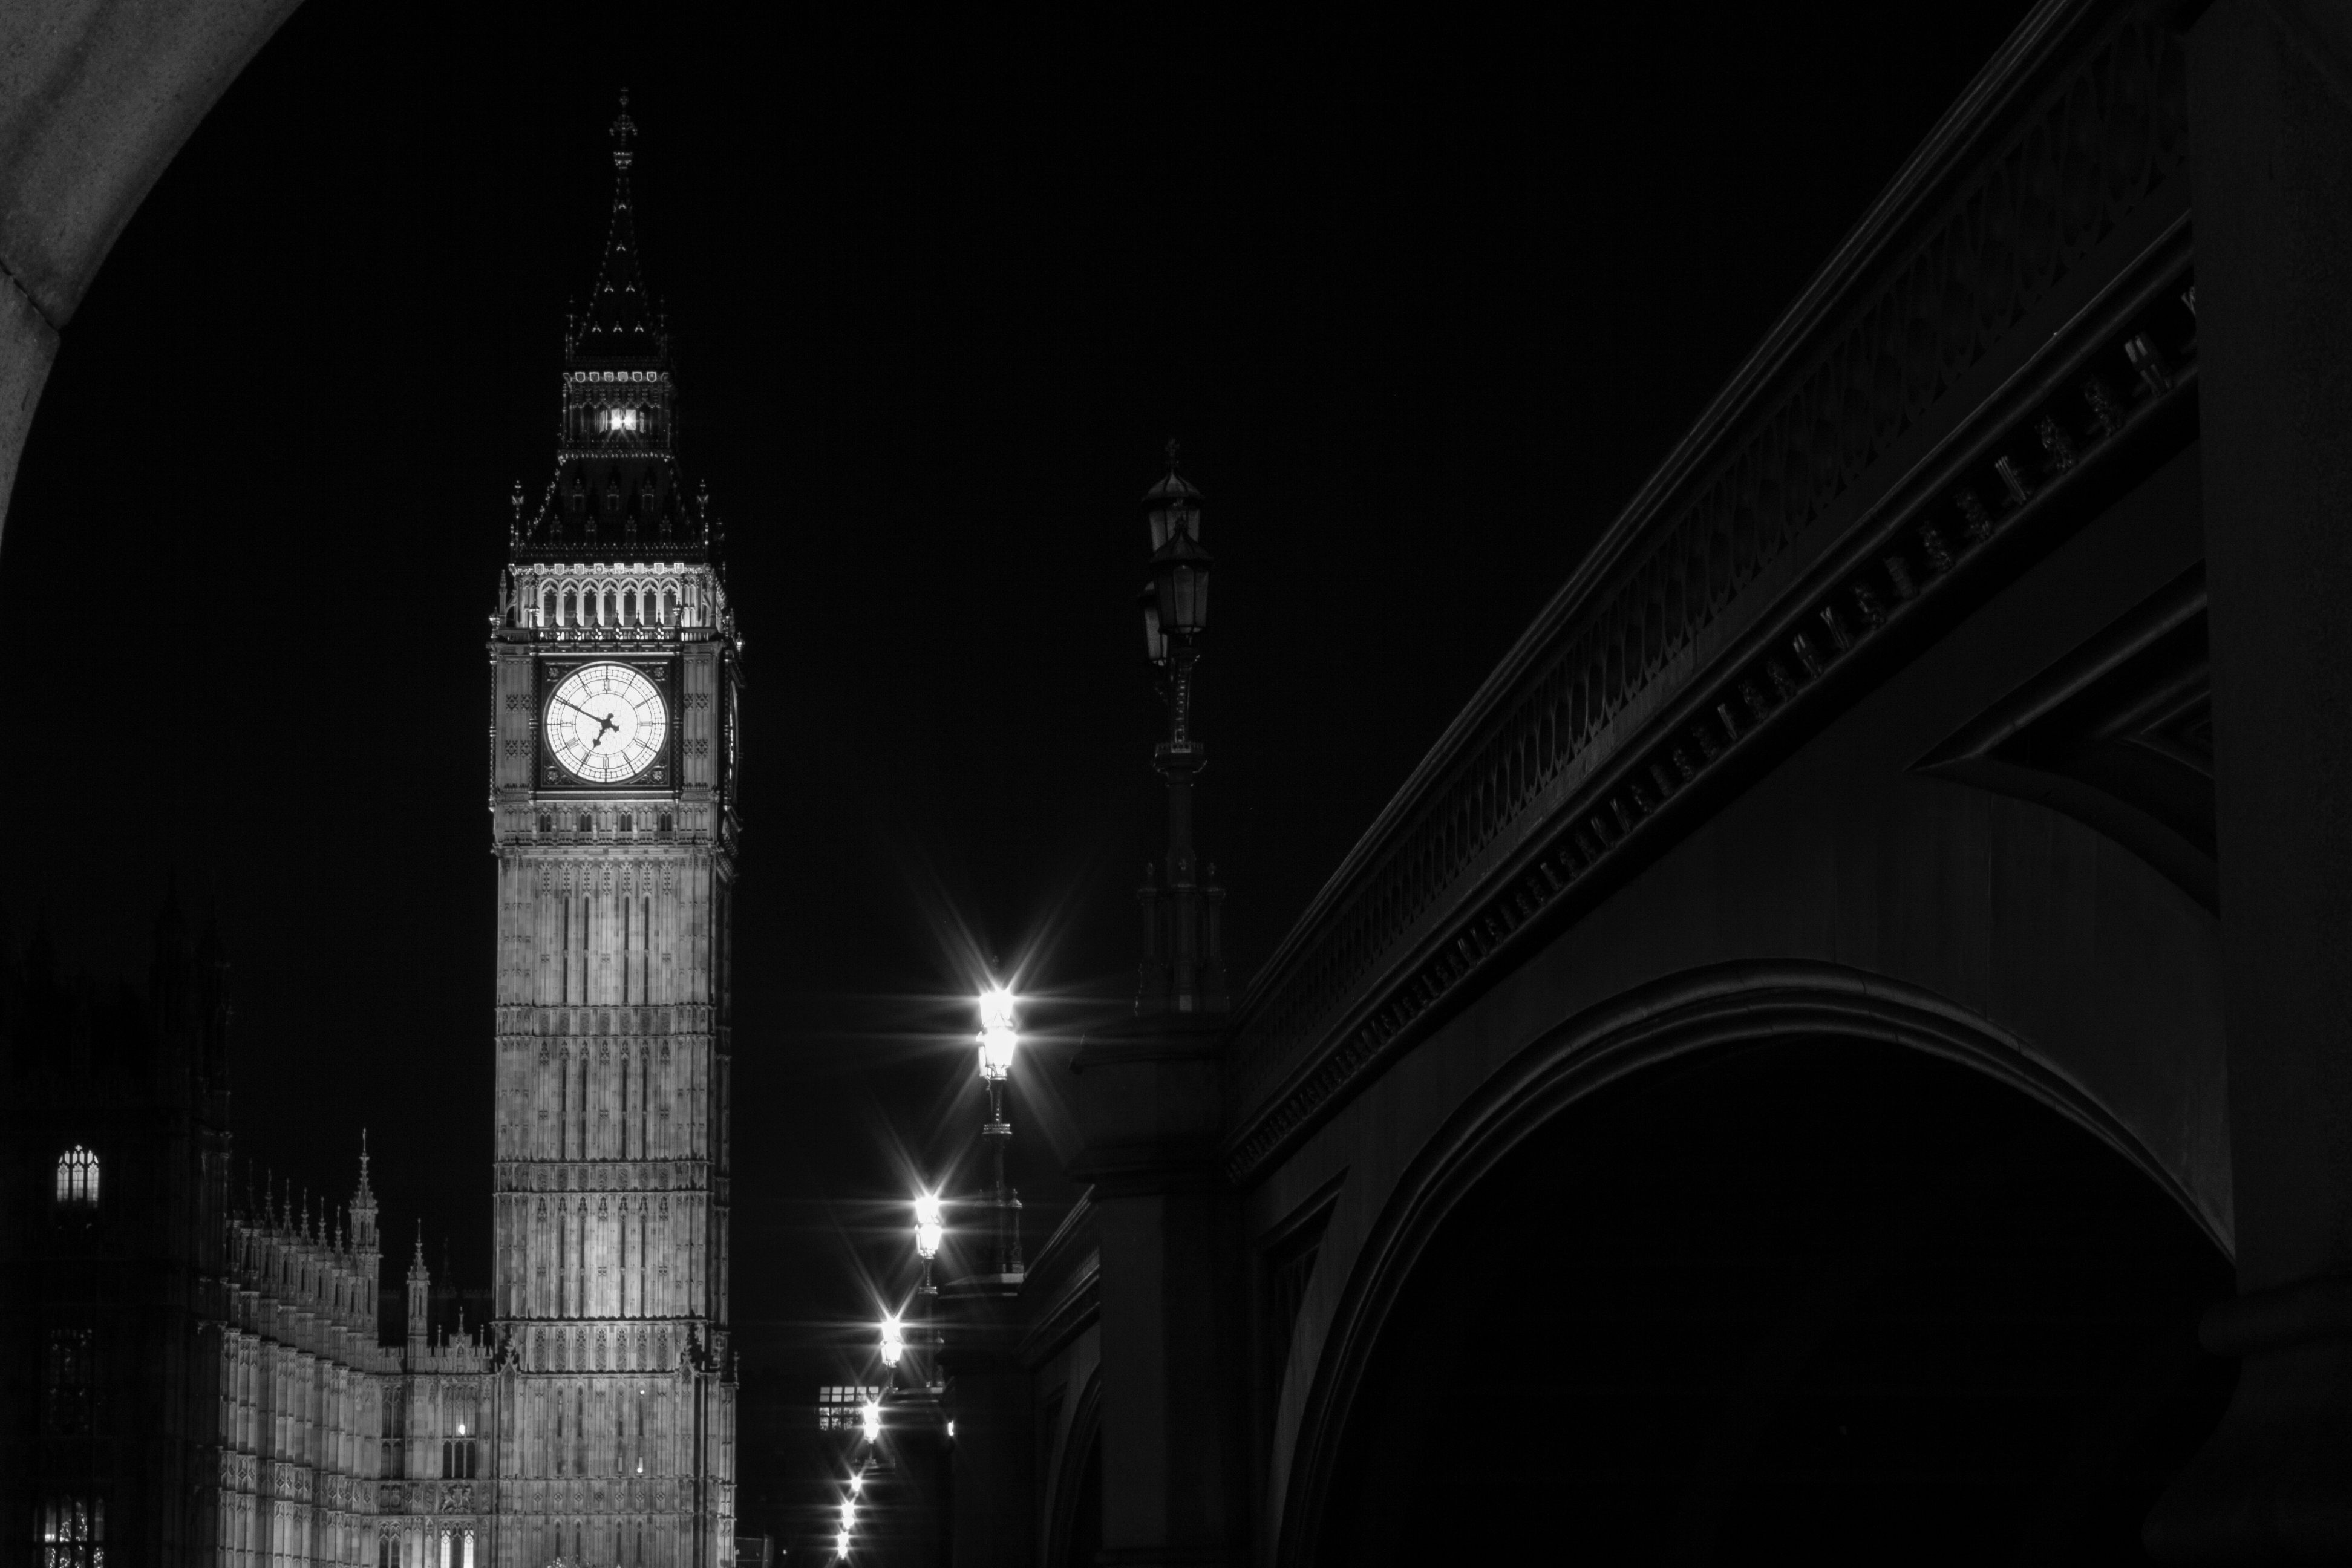 El Big Ben, reloj del Parlamento Británico, en Londres. Diciembre de 2011.